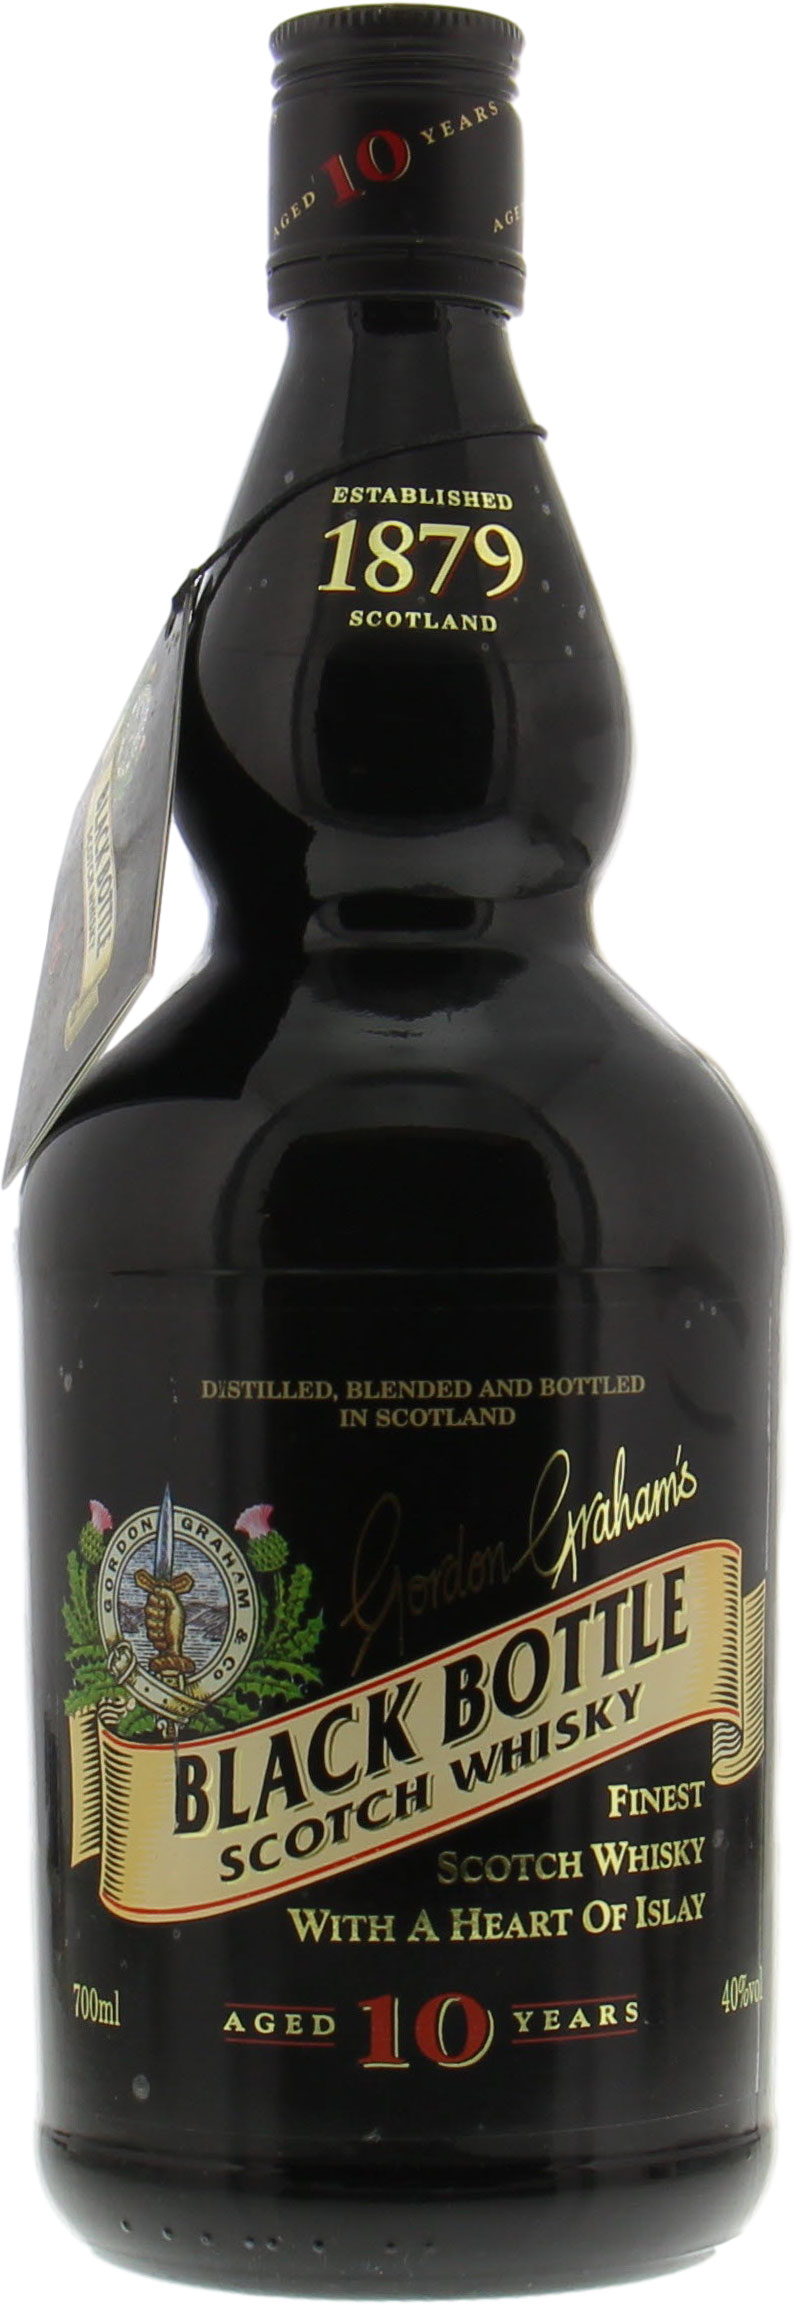 Bunnahabhain - Black Bottle 10 Years Old Finest Scotch Whisky 40% NV